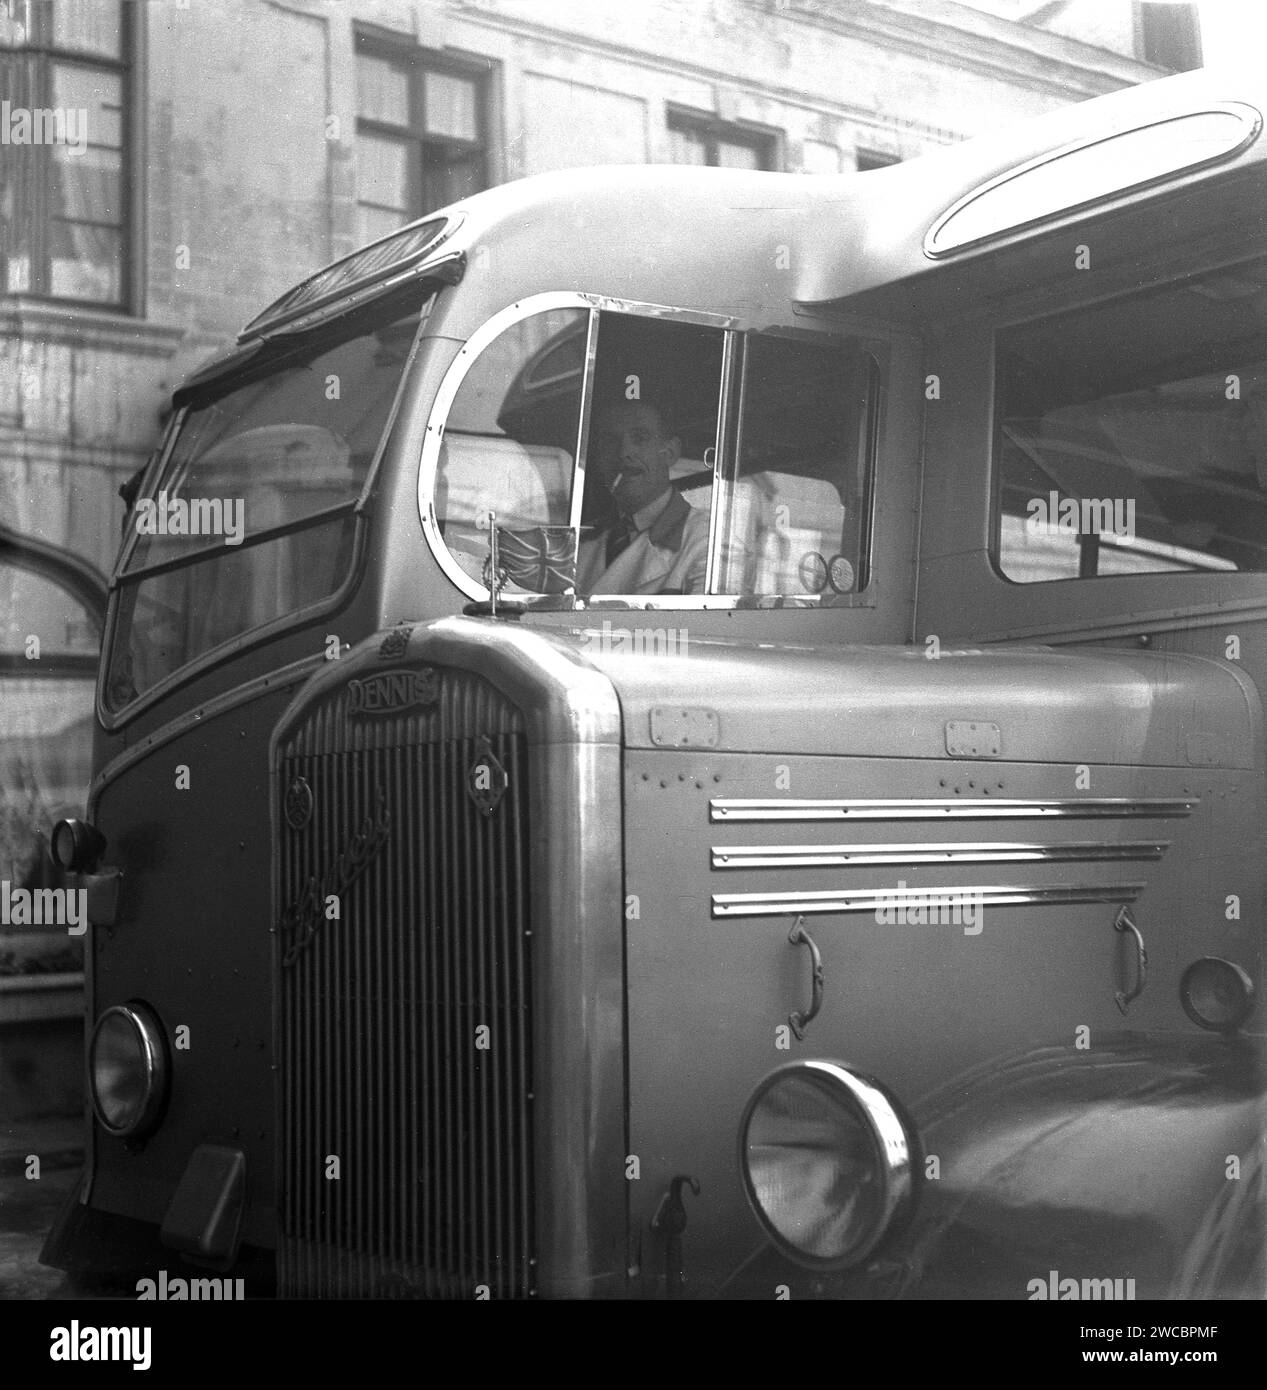 1950, historisch, Blick auf den Kühlergrill und die Kabine mit Fahrer eines Dennis-Reisebusses oder -Busses, ein Dennis Lancet III mit Duple-Karosserie, Brüssel, Belgien. Auf der Motorhaube befindet sich ein Wagenheber mit RAC- und TCS-Emblemen auf dem Kühlergrill. Stockfoto